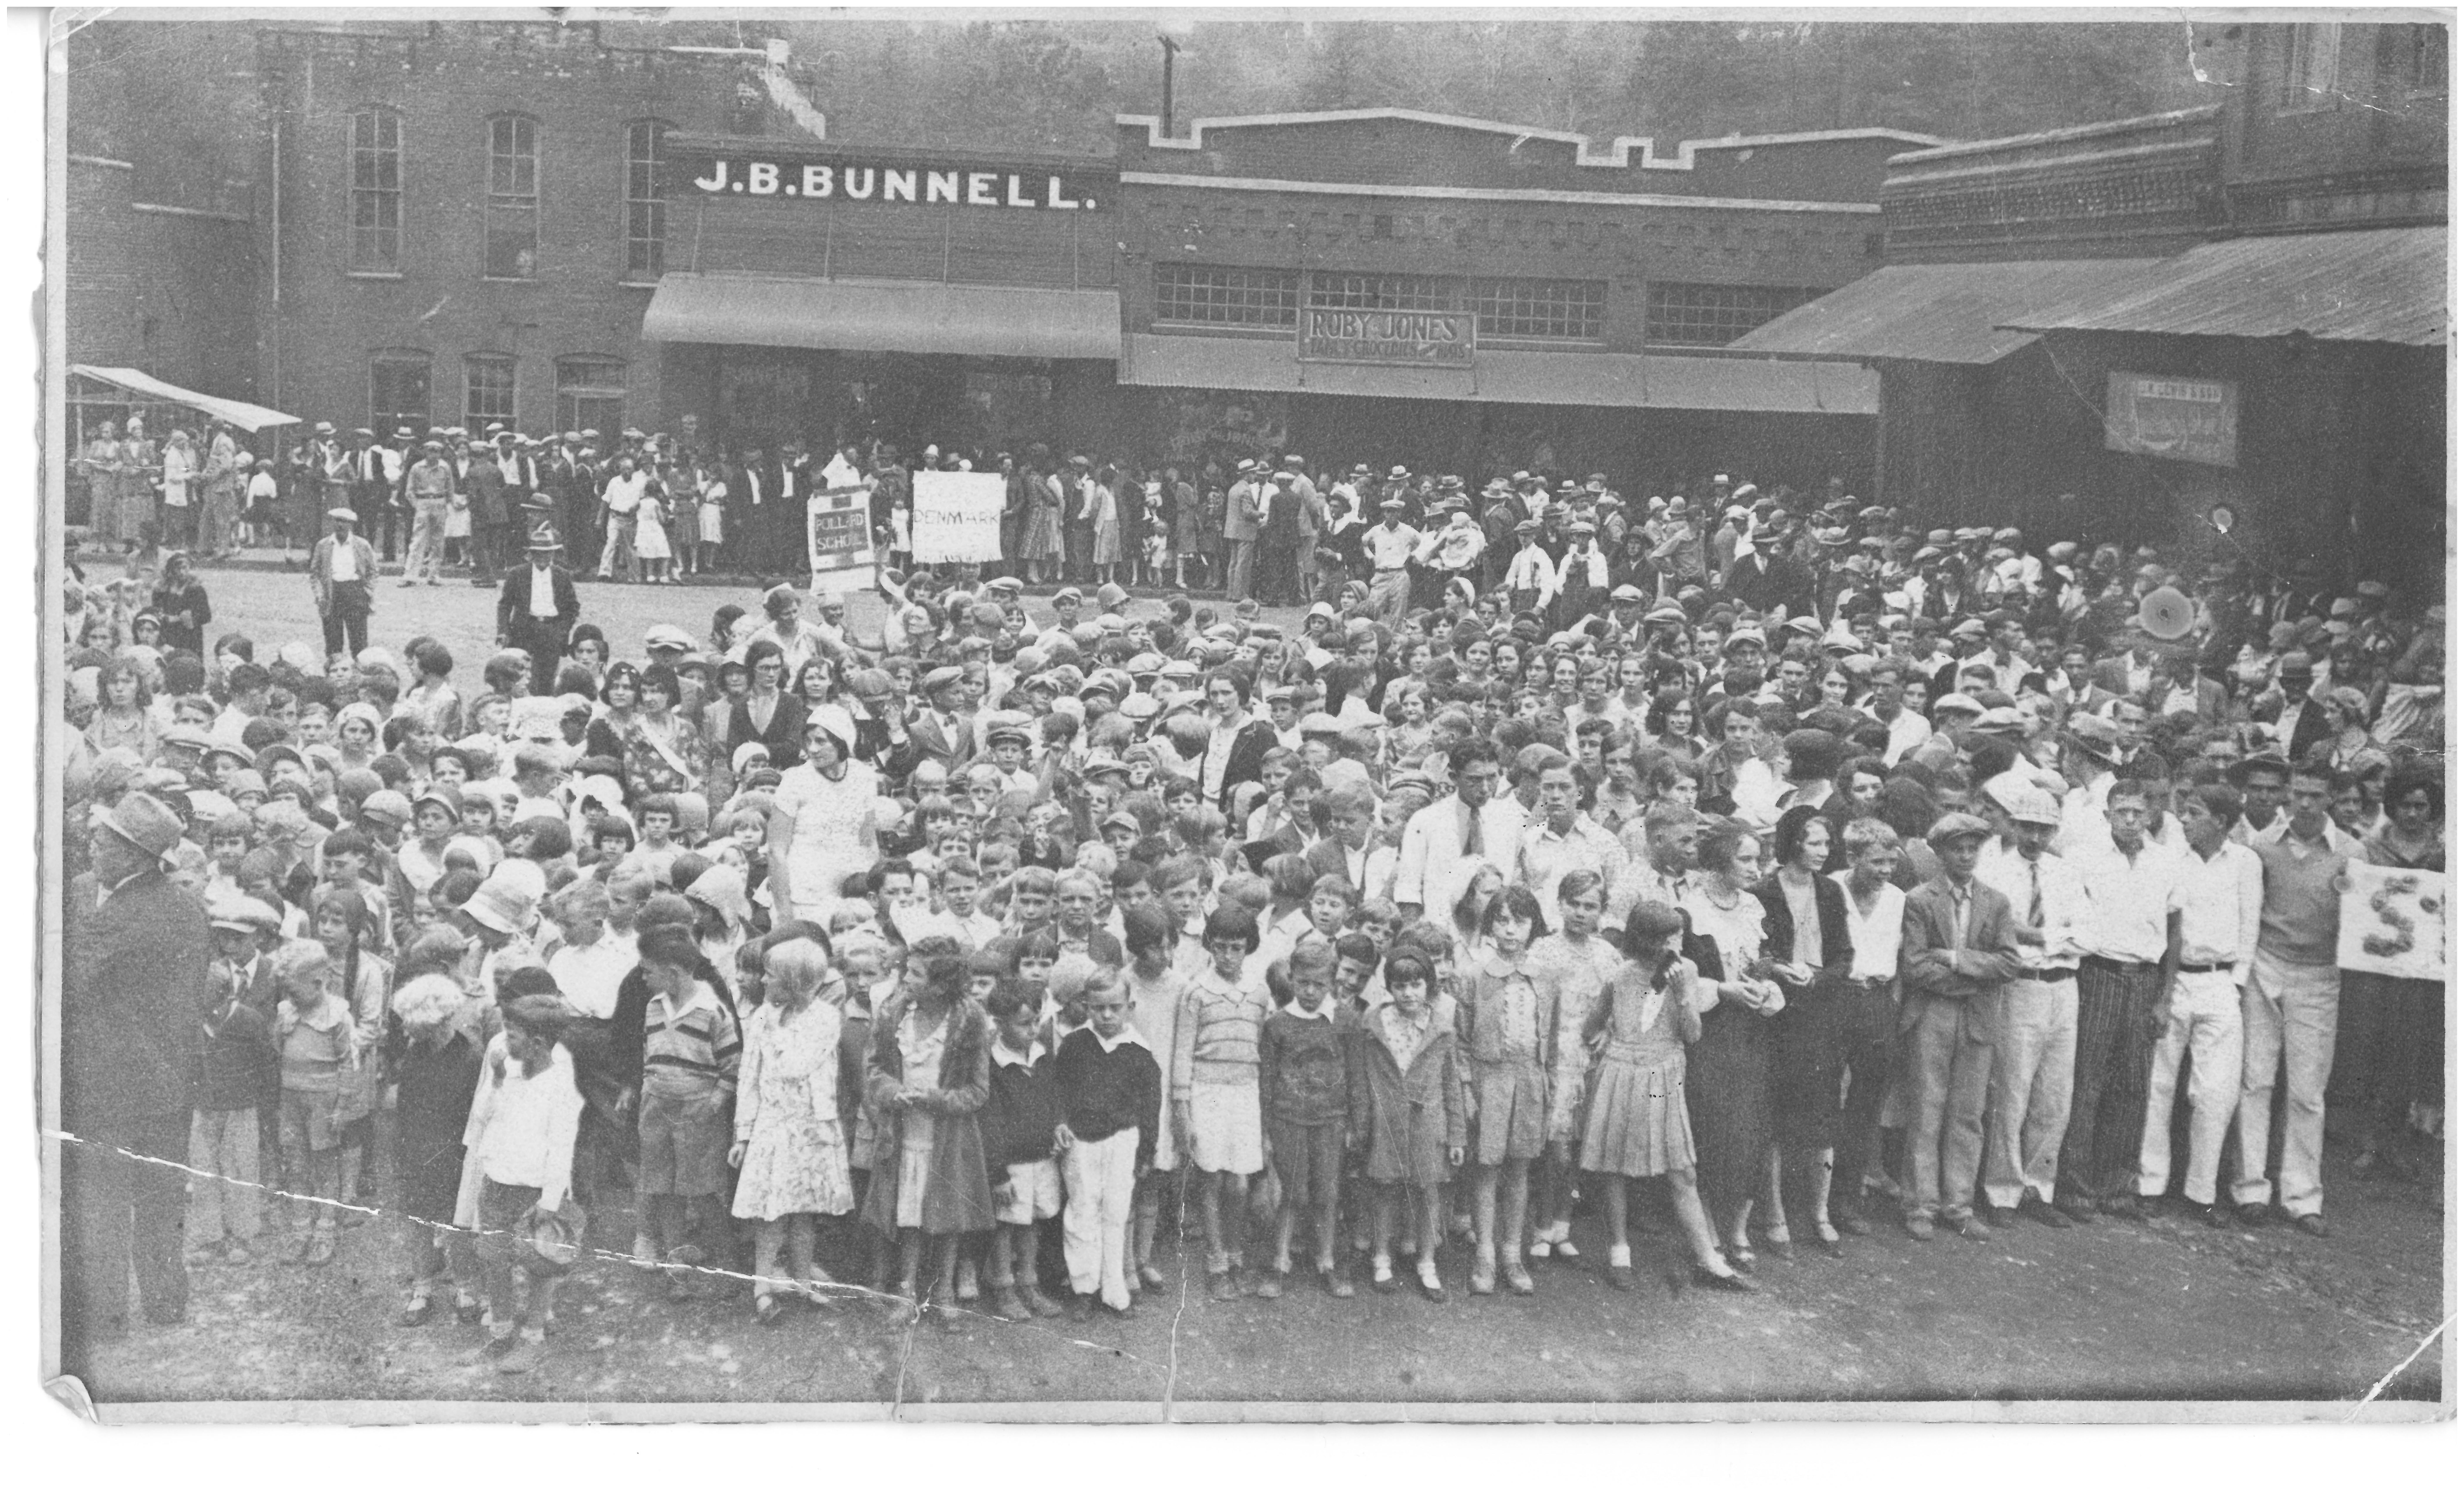 crowd photo 1920's